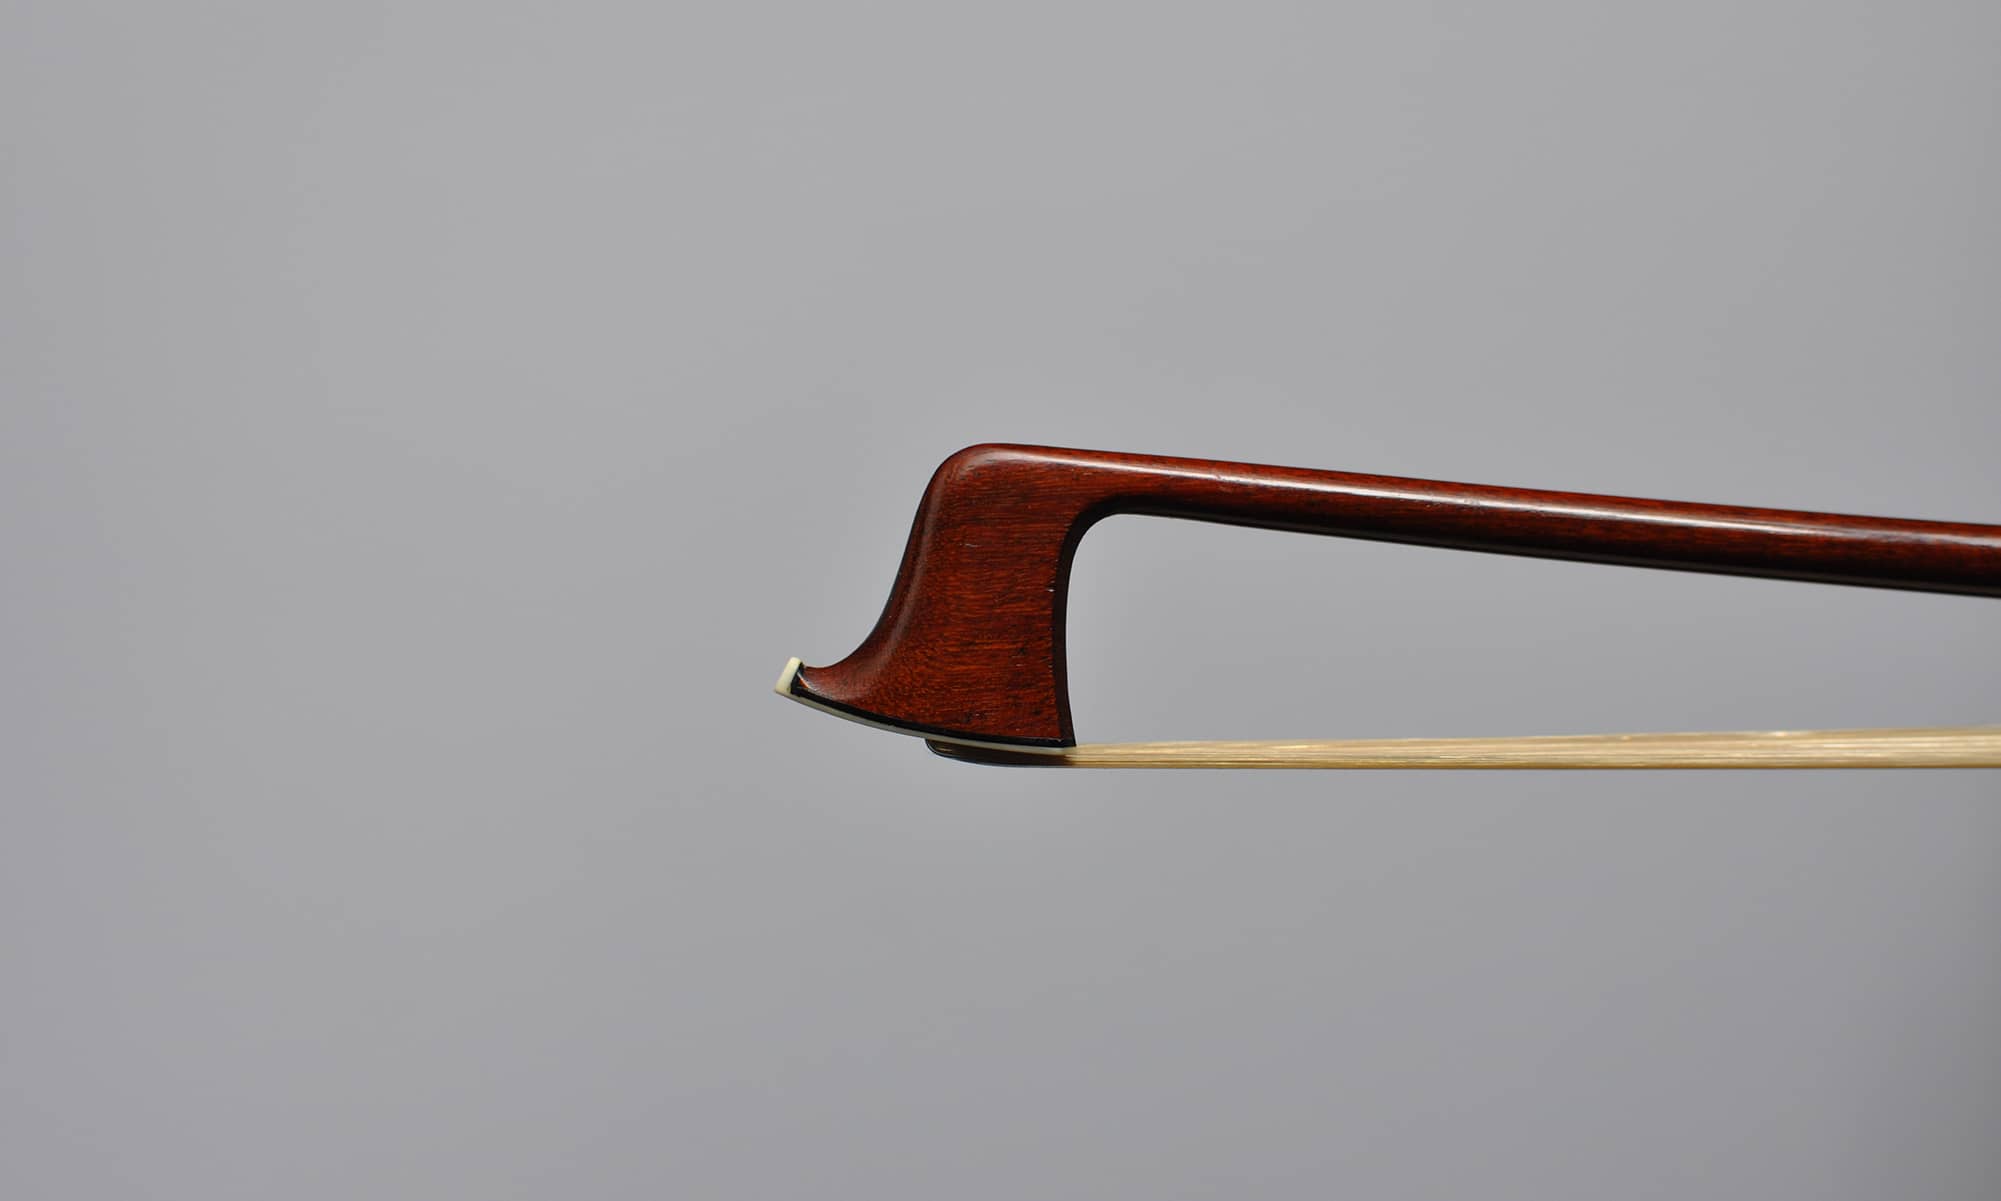 Sale violin bow by Nicolas Bazin 1890